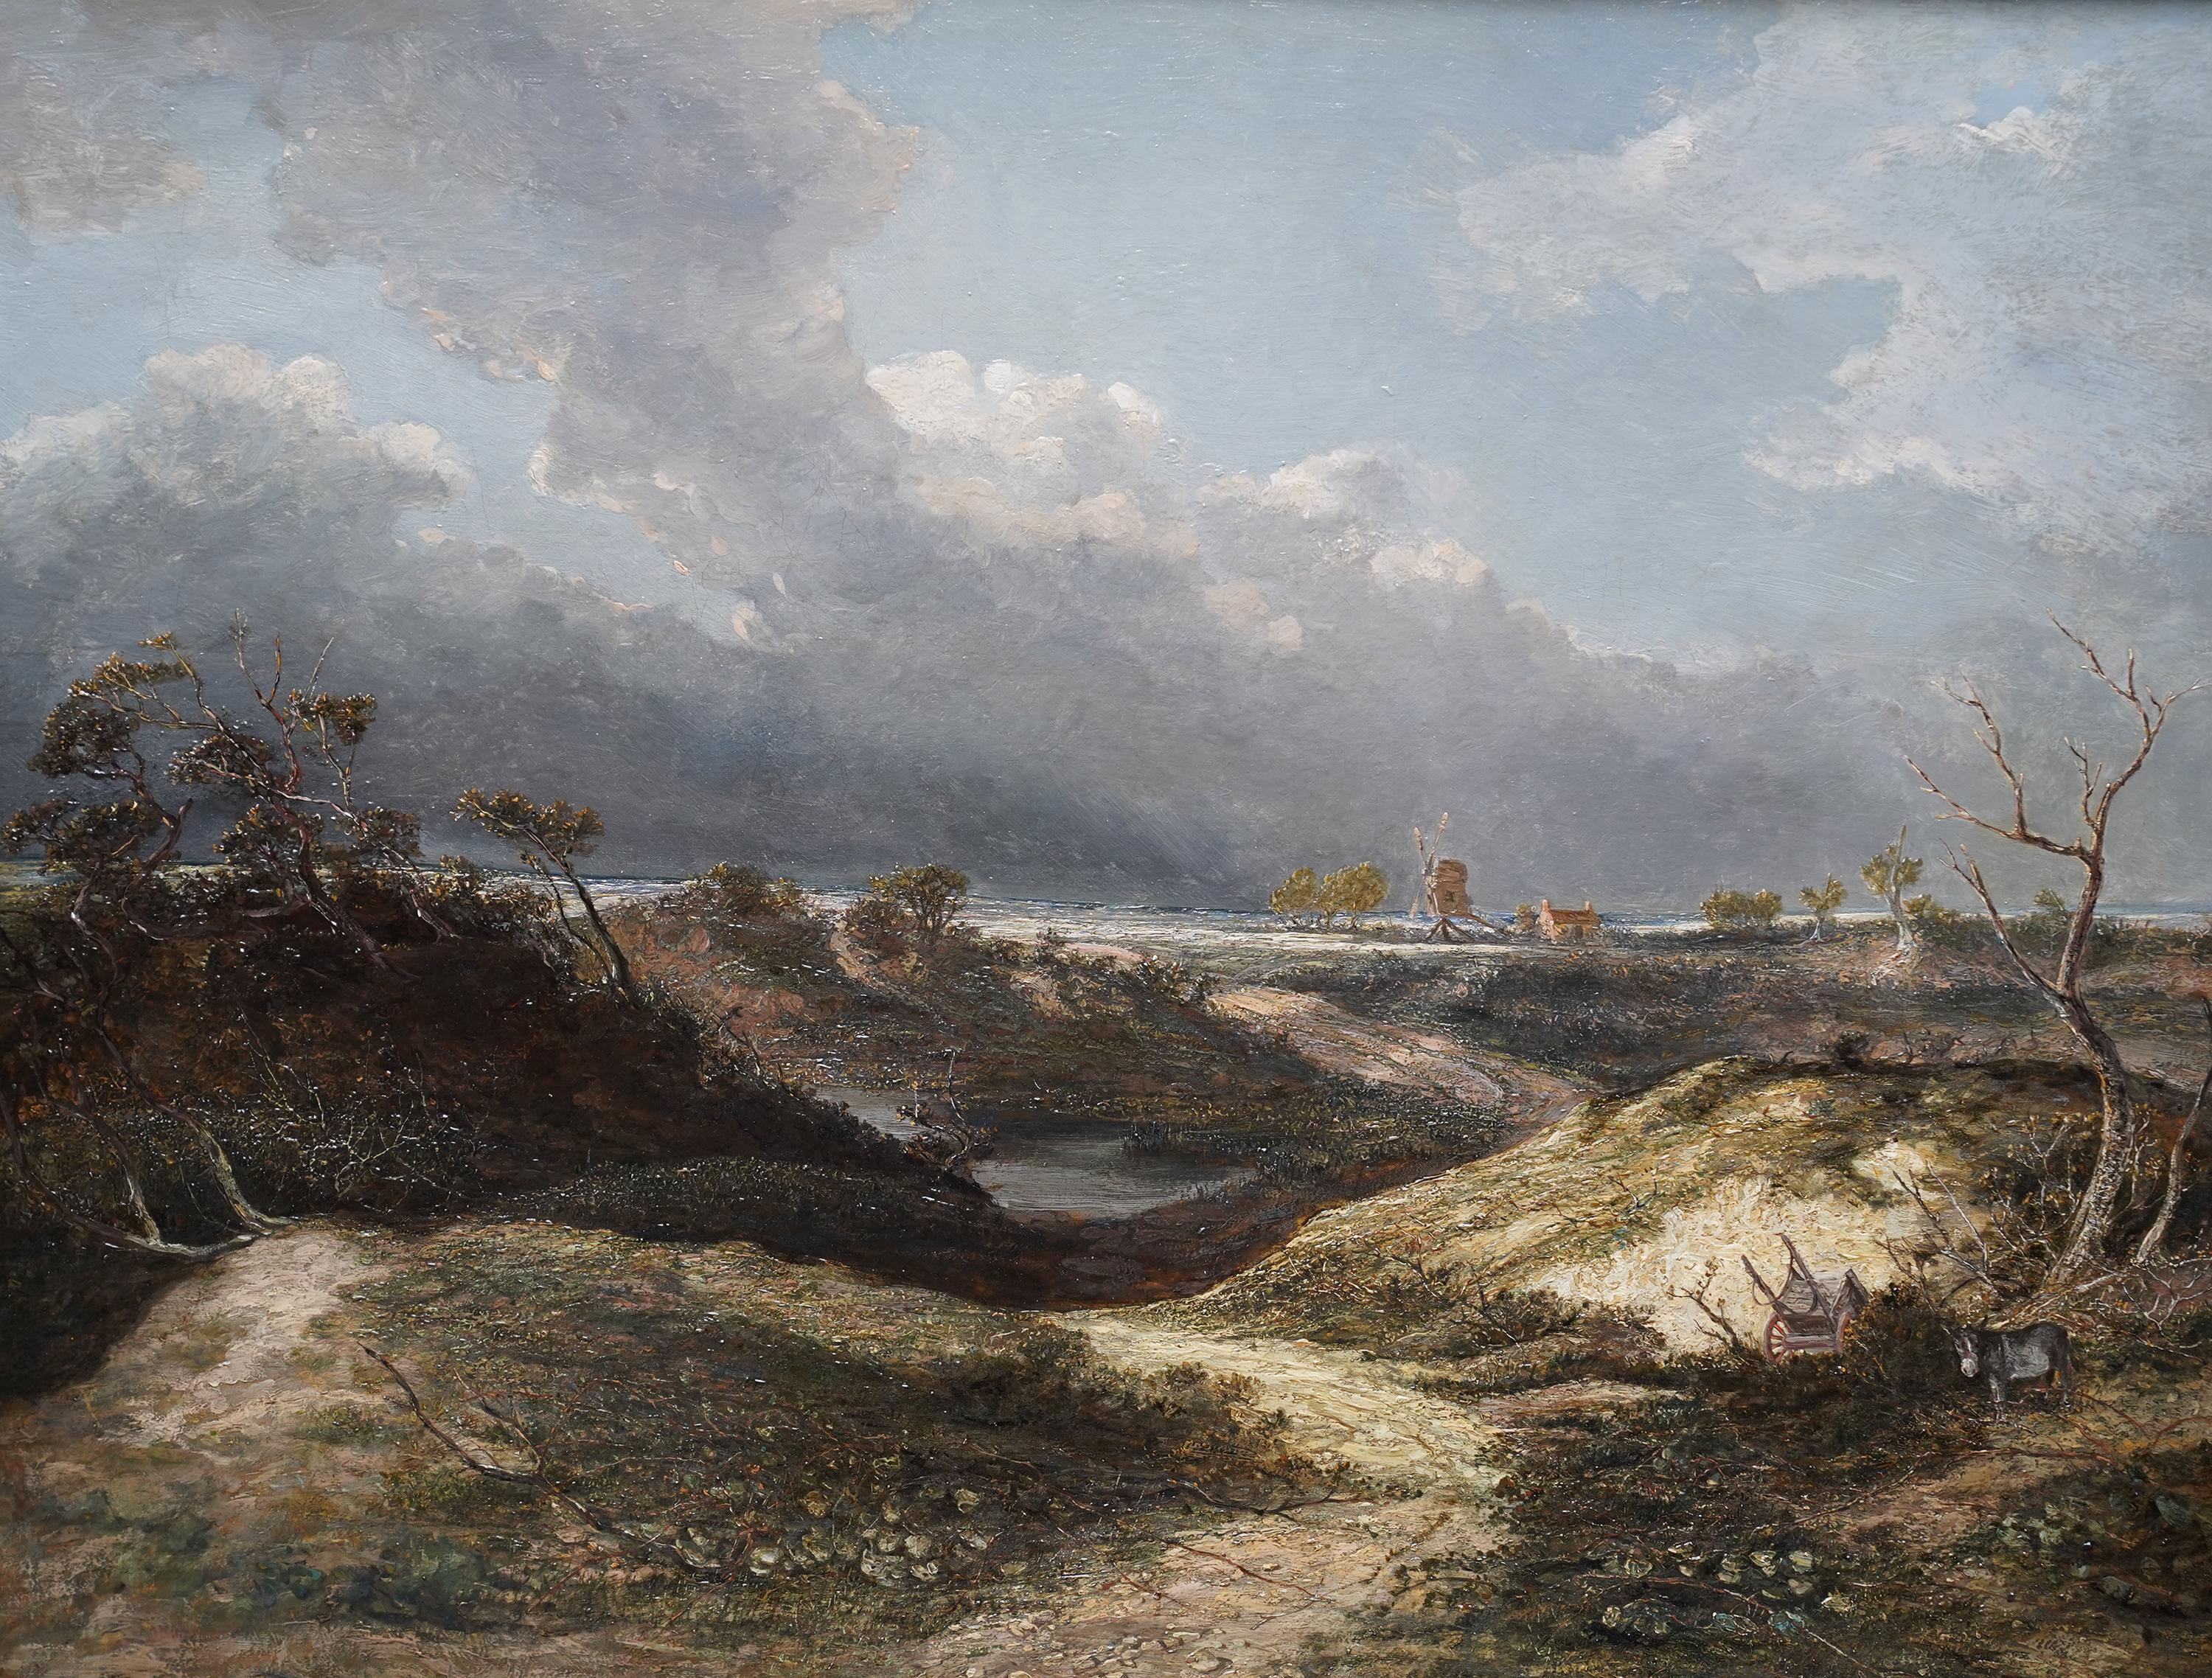 Landschaft mit Windmühle – britisches Counstablesque-Ölgemälde des 19. Jahrhunderts – Painting von Frederick Waters Watts